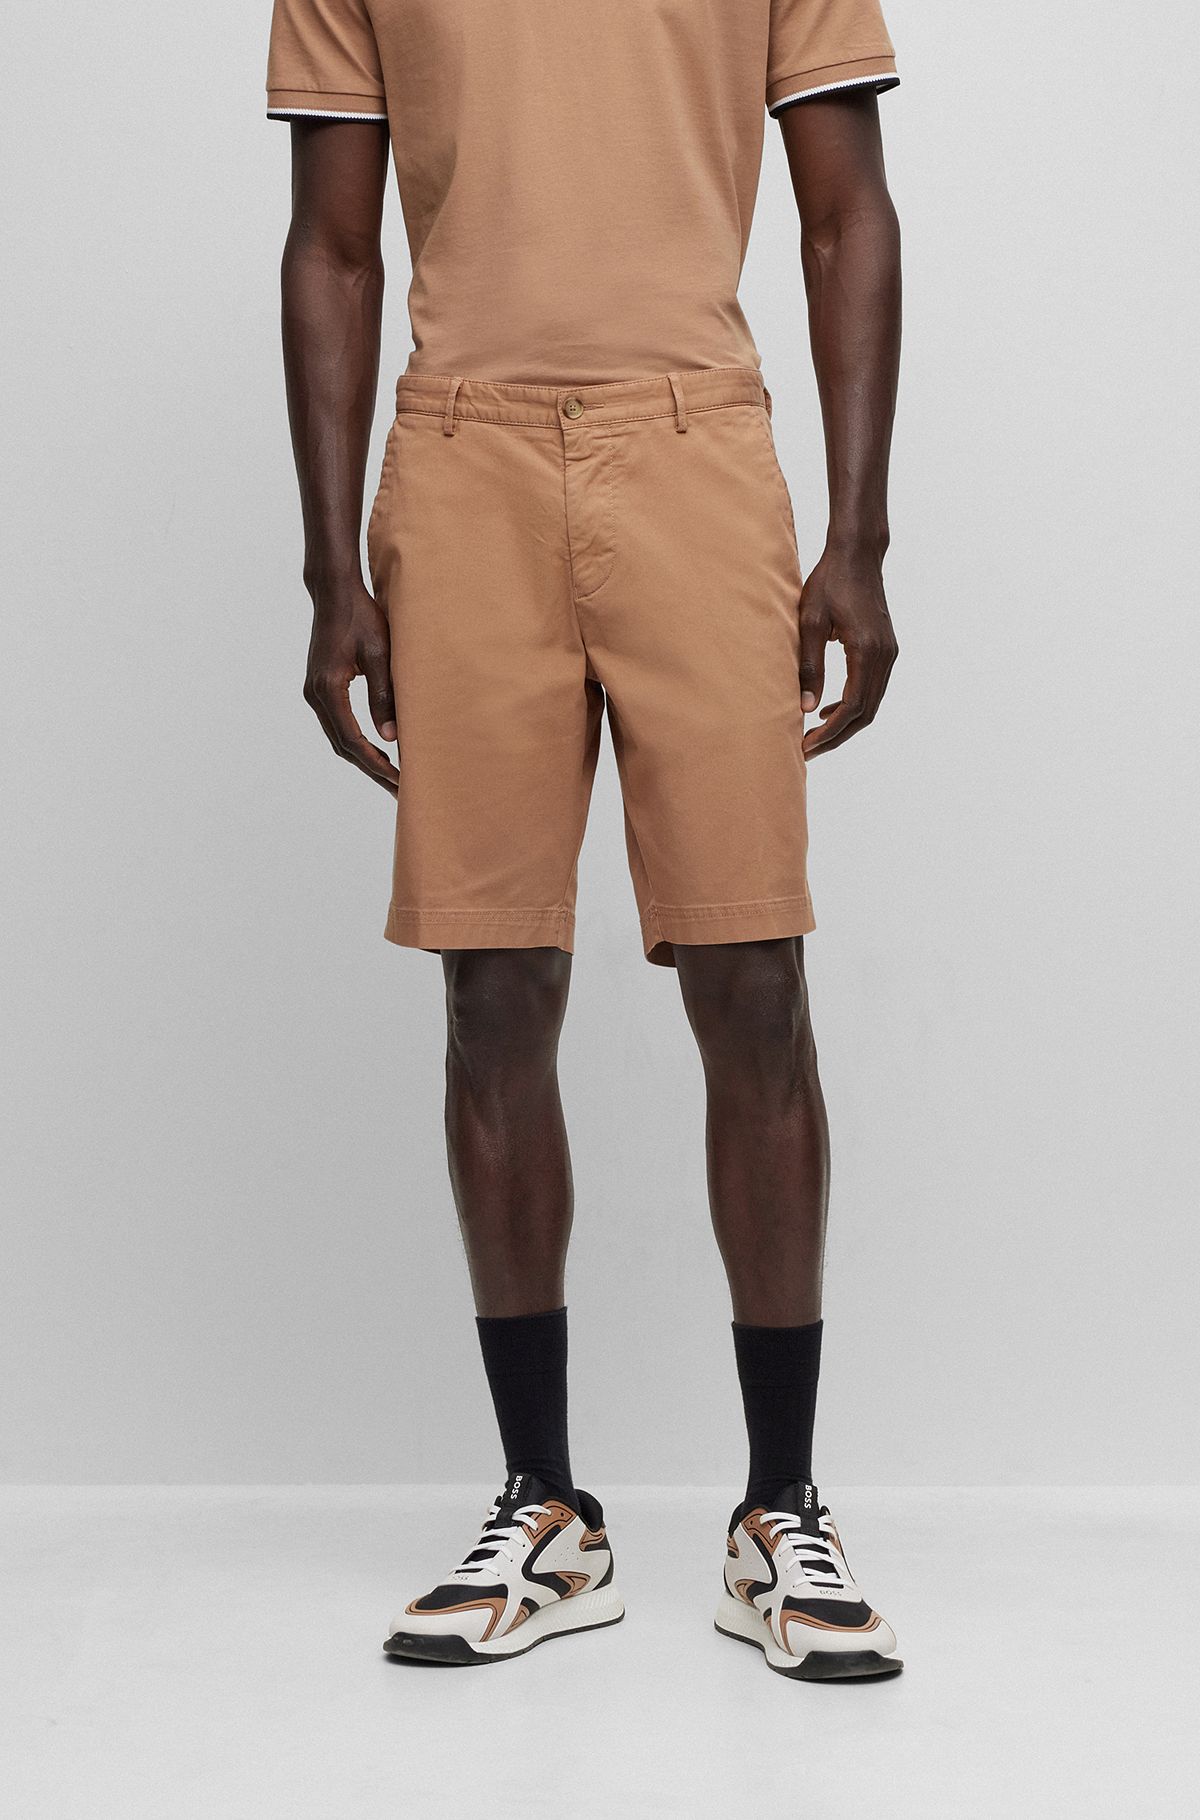 Men's Shorts - Chino, Slim, and Designer | Hugo Boss